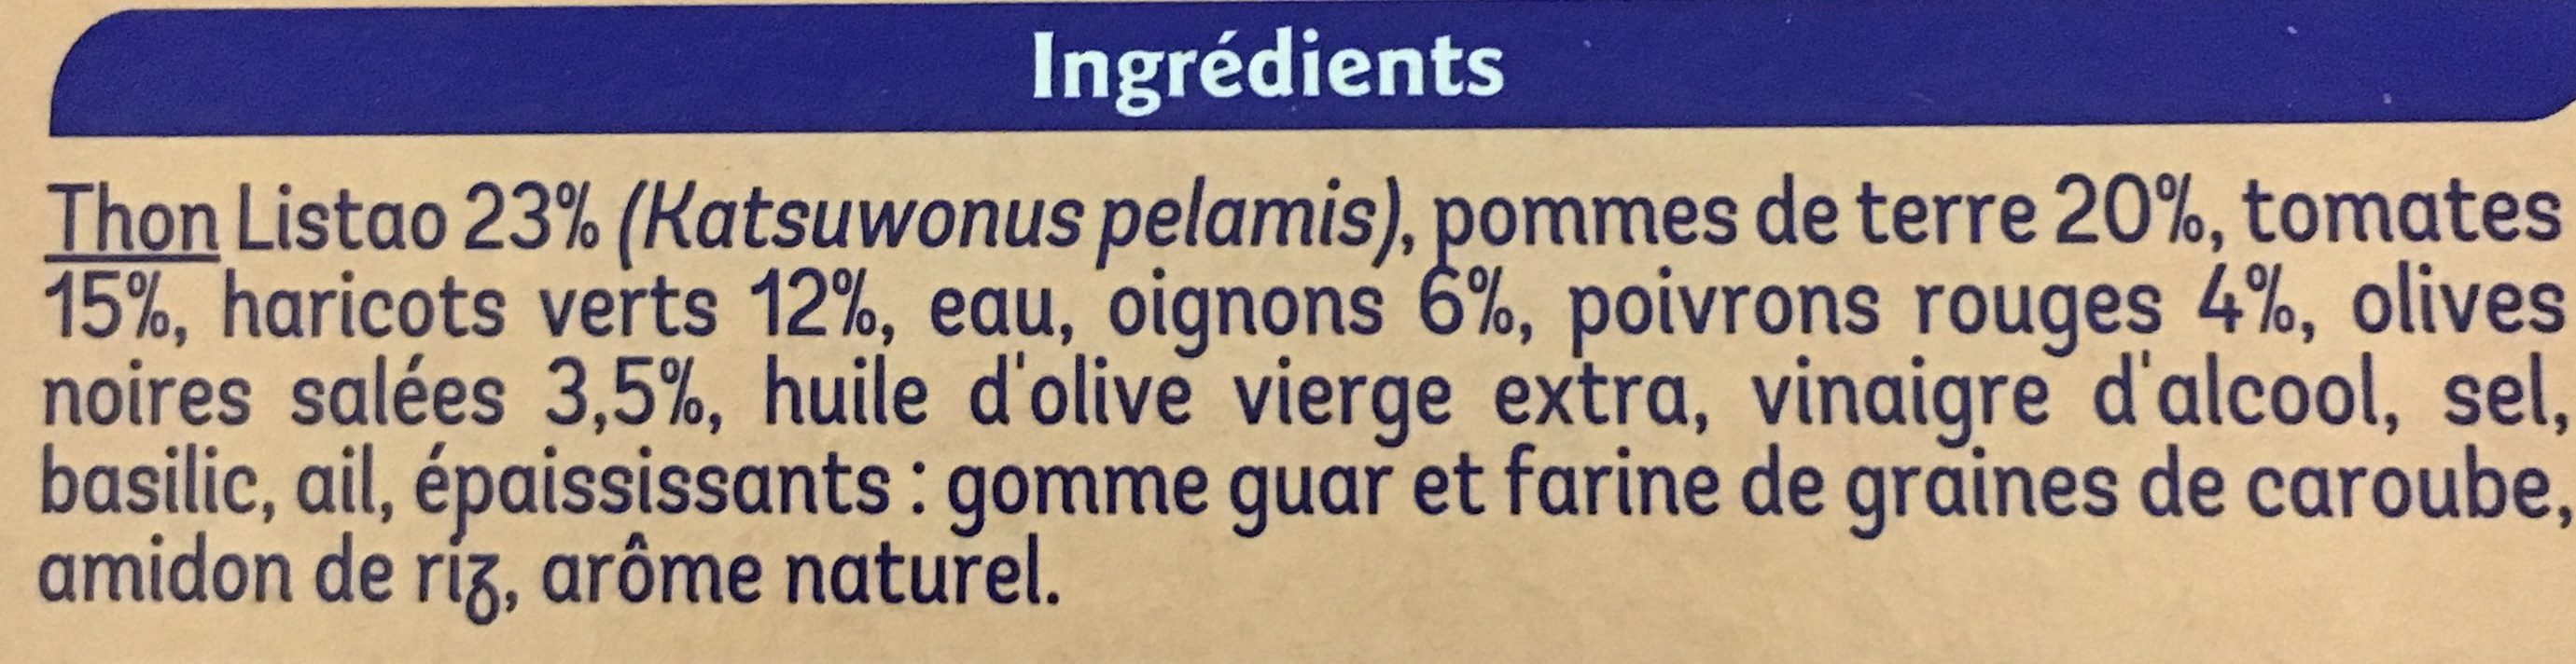 Salade niçoise Thon - Ingredients - fr